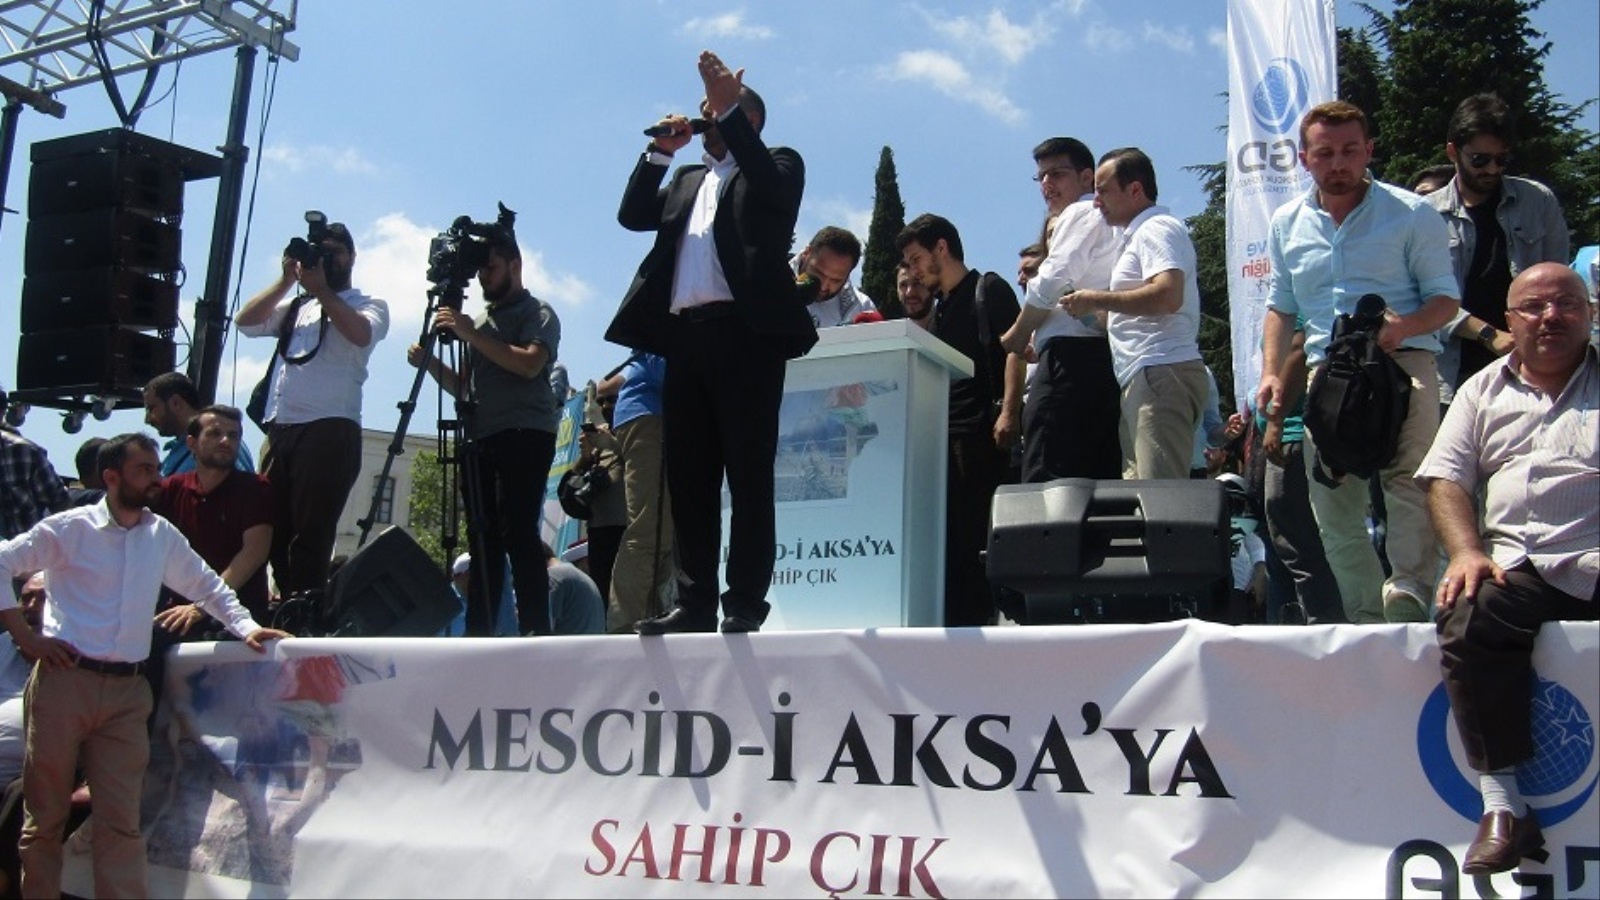 المتحدثون في وقفة الغضب للأقصى في إسطنبول طالبوا بمعاقبة إسرائيل (الجزيرة)